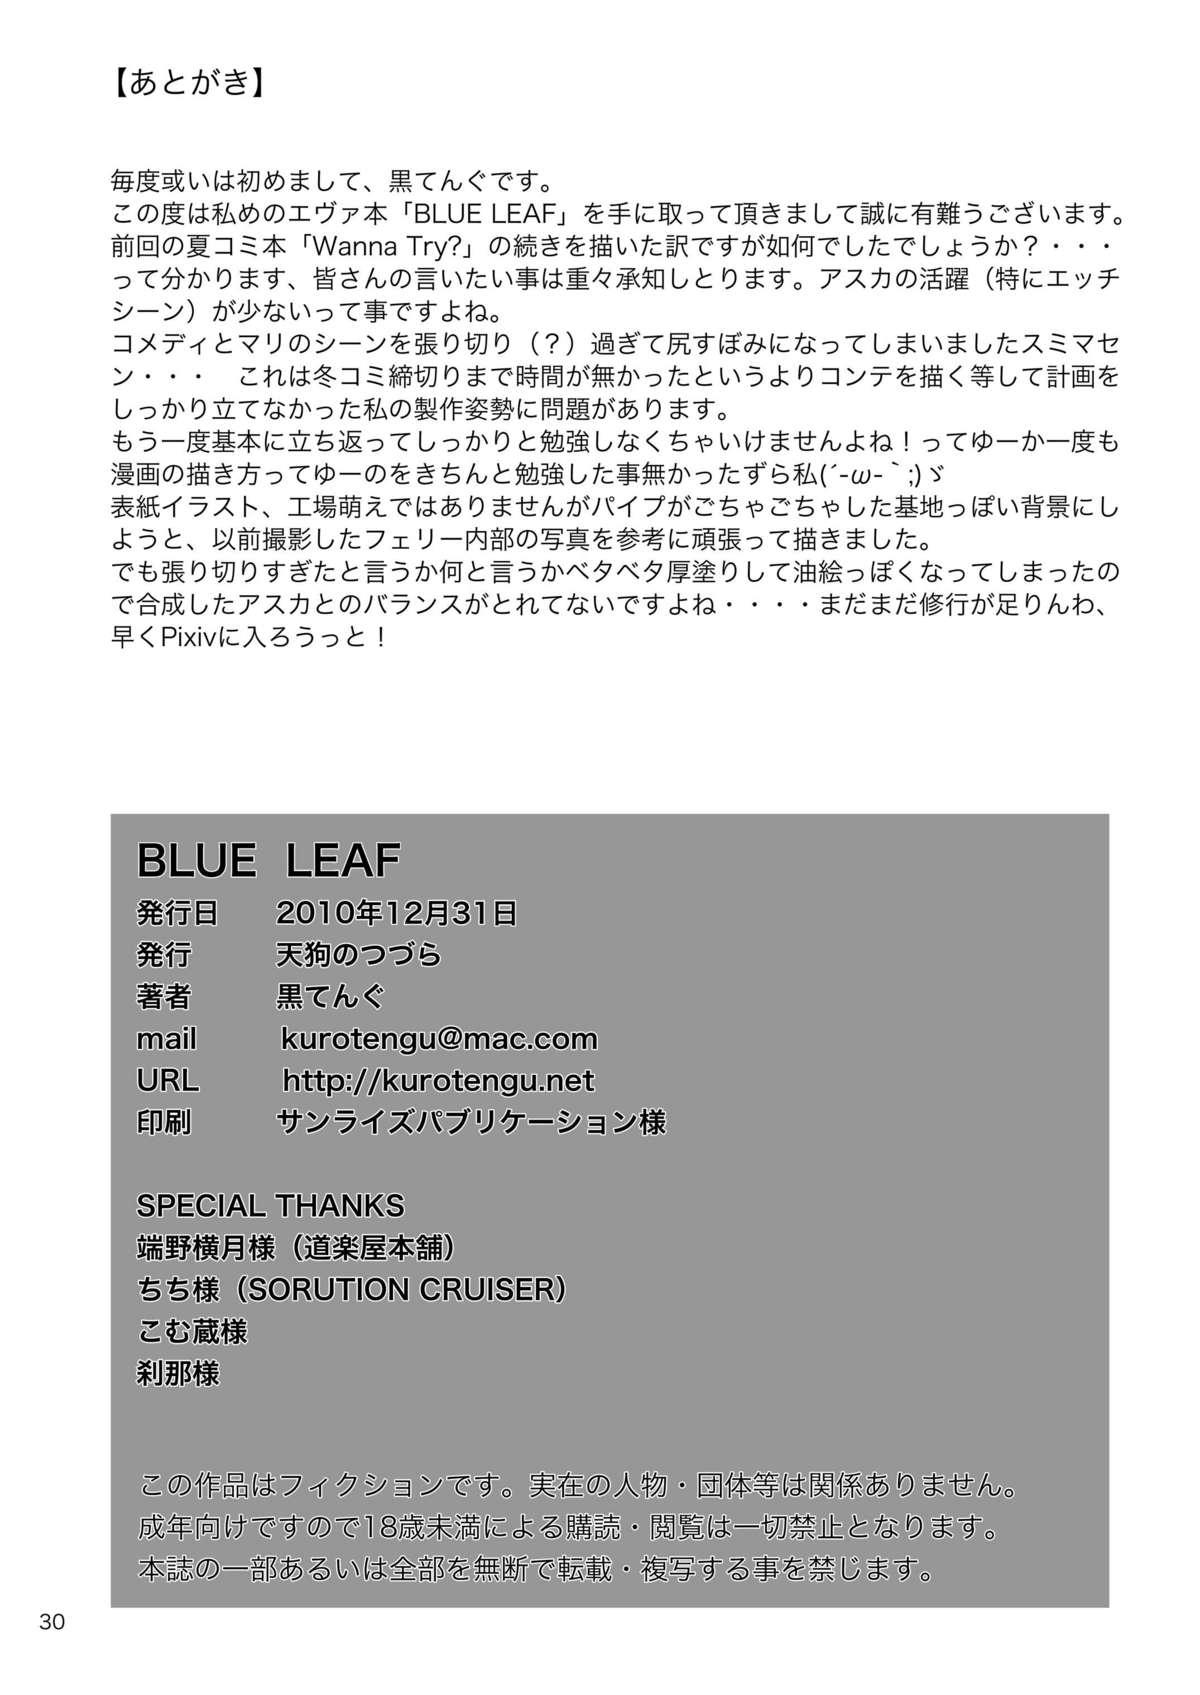 BLUE LEAF 28